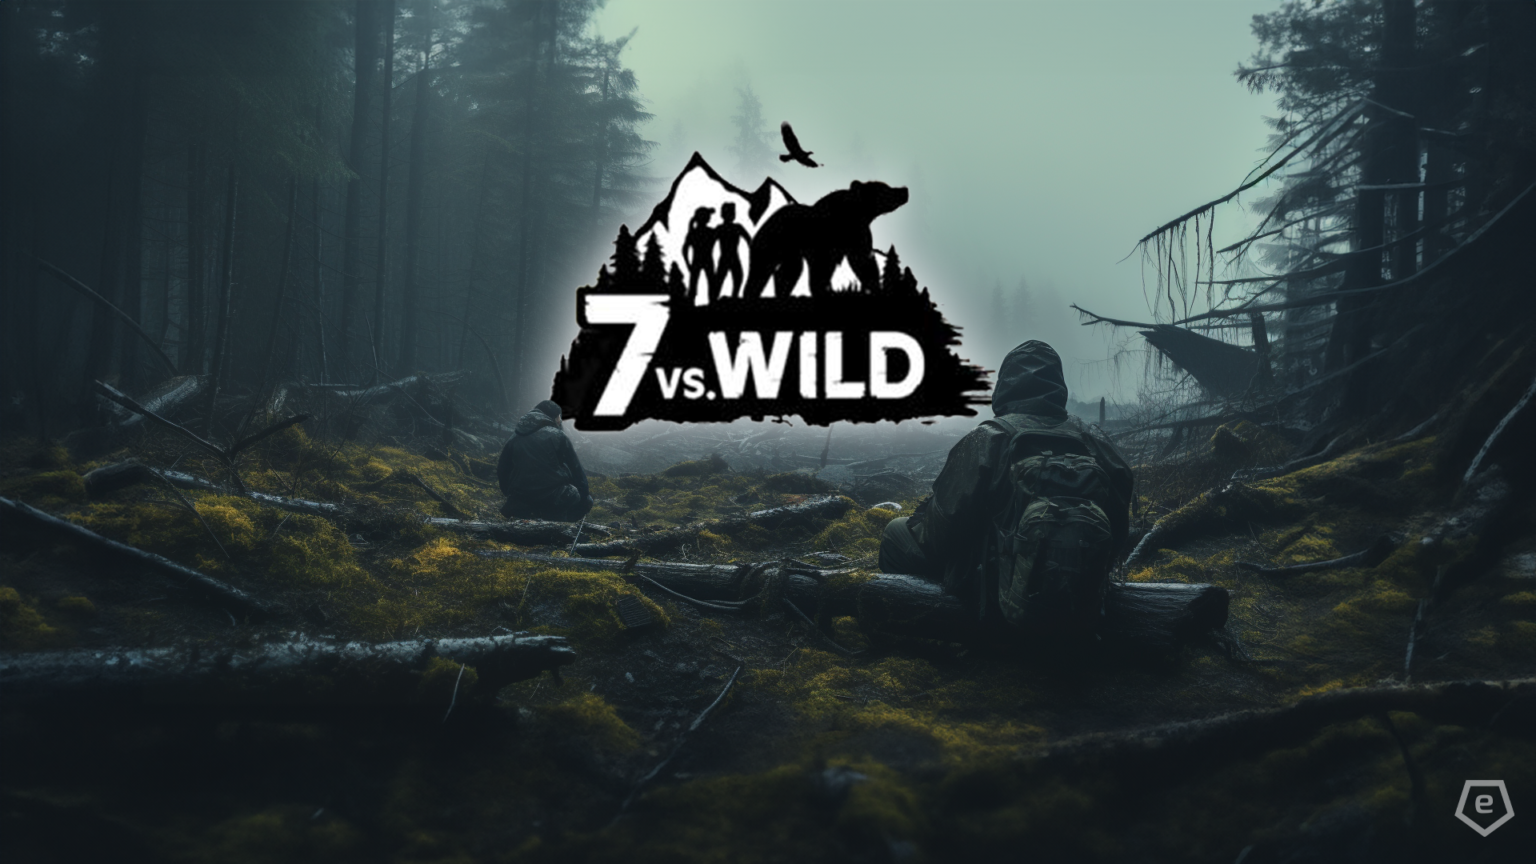 7 vs. Wild Staffel 3 Folge 11, während die Teams gegen Kälte kämpfen. Ein Survival-Abenteuer, das unter die Haut geht.